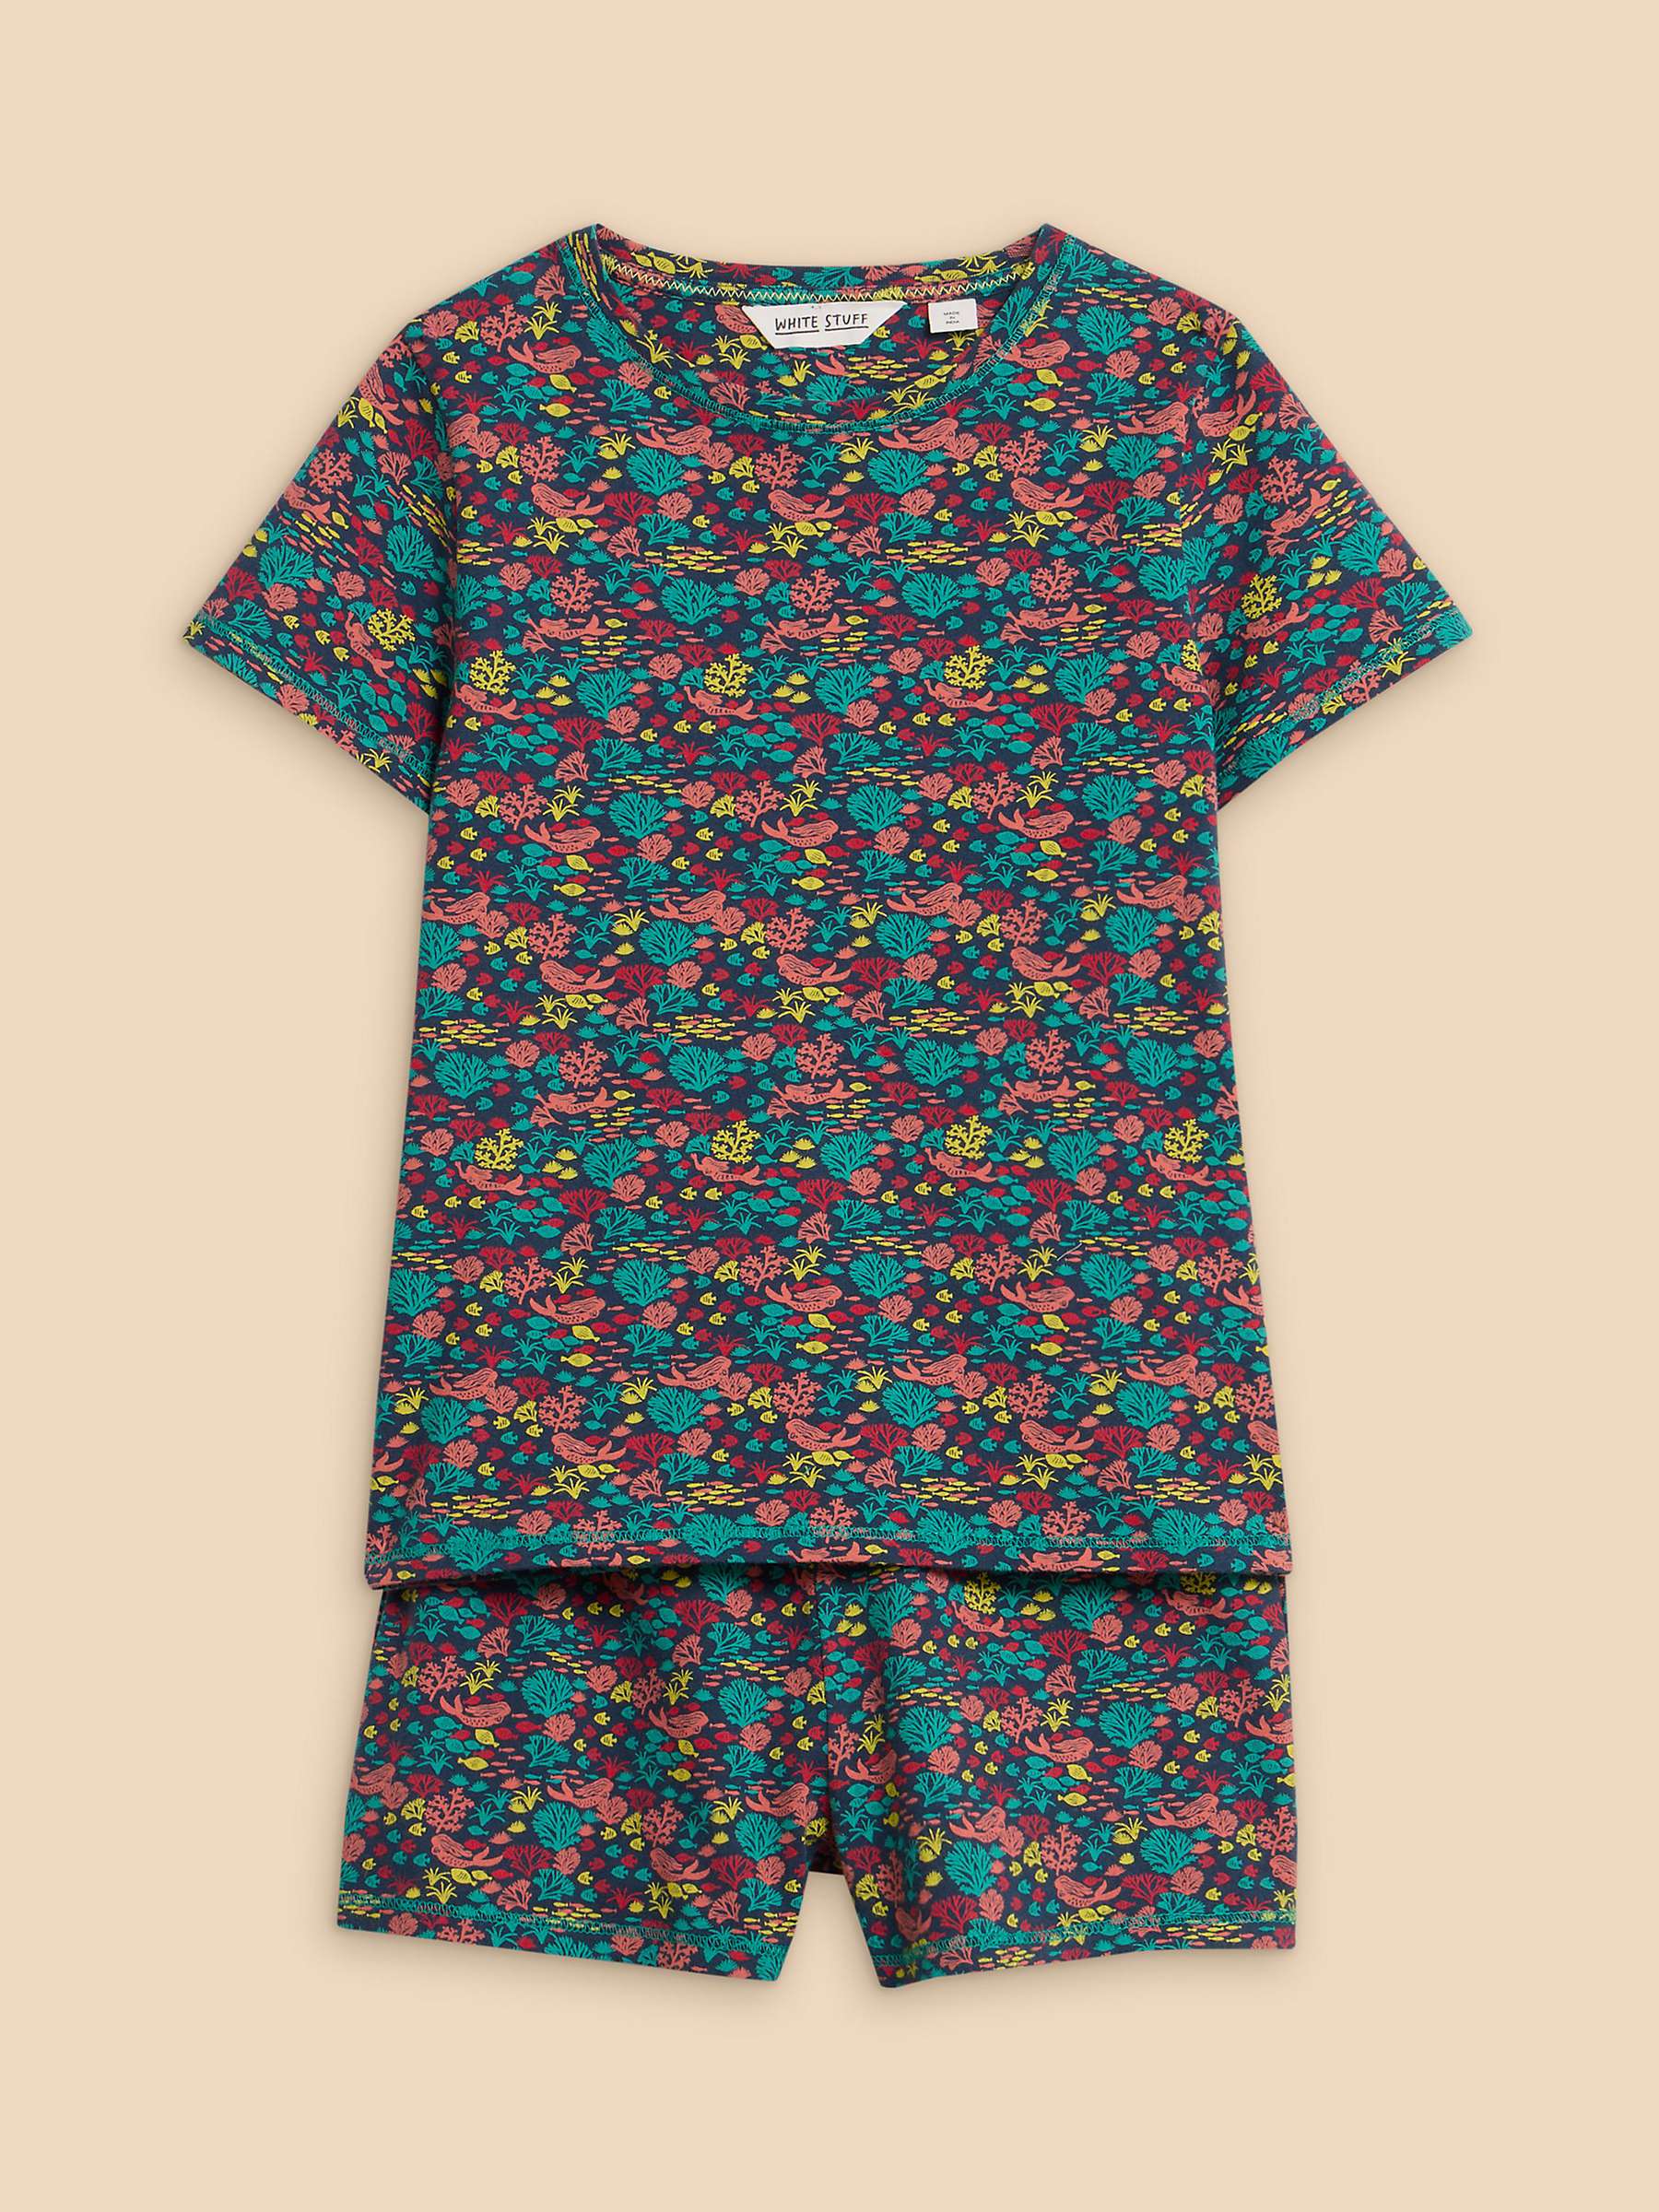 Buy White Stuff Kids' Sealife Print Shorts Pyjamas Set, Navy/Multi Online at johnlewis.com